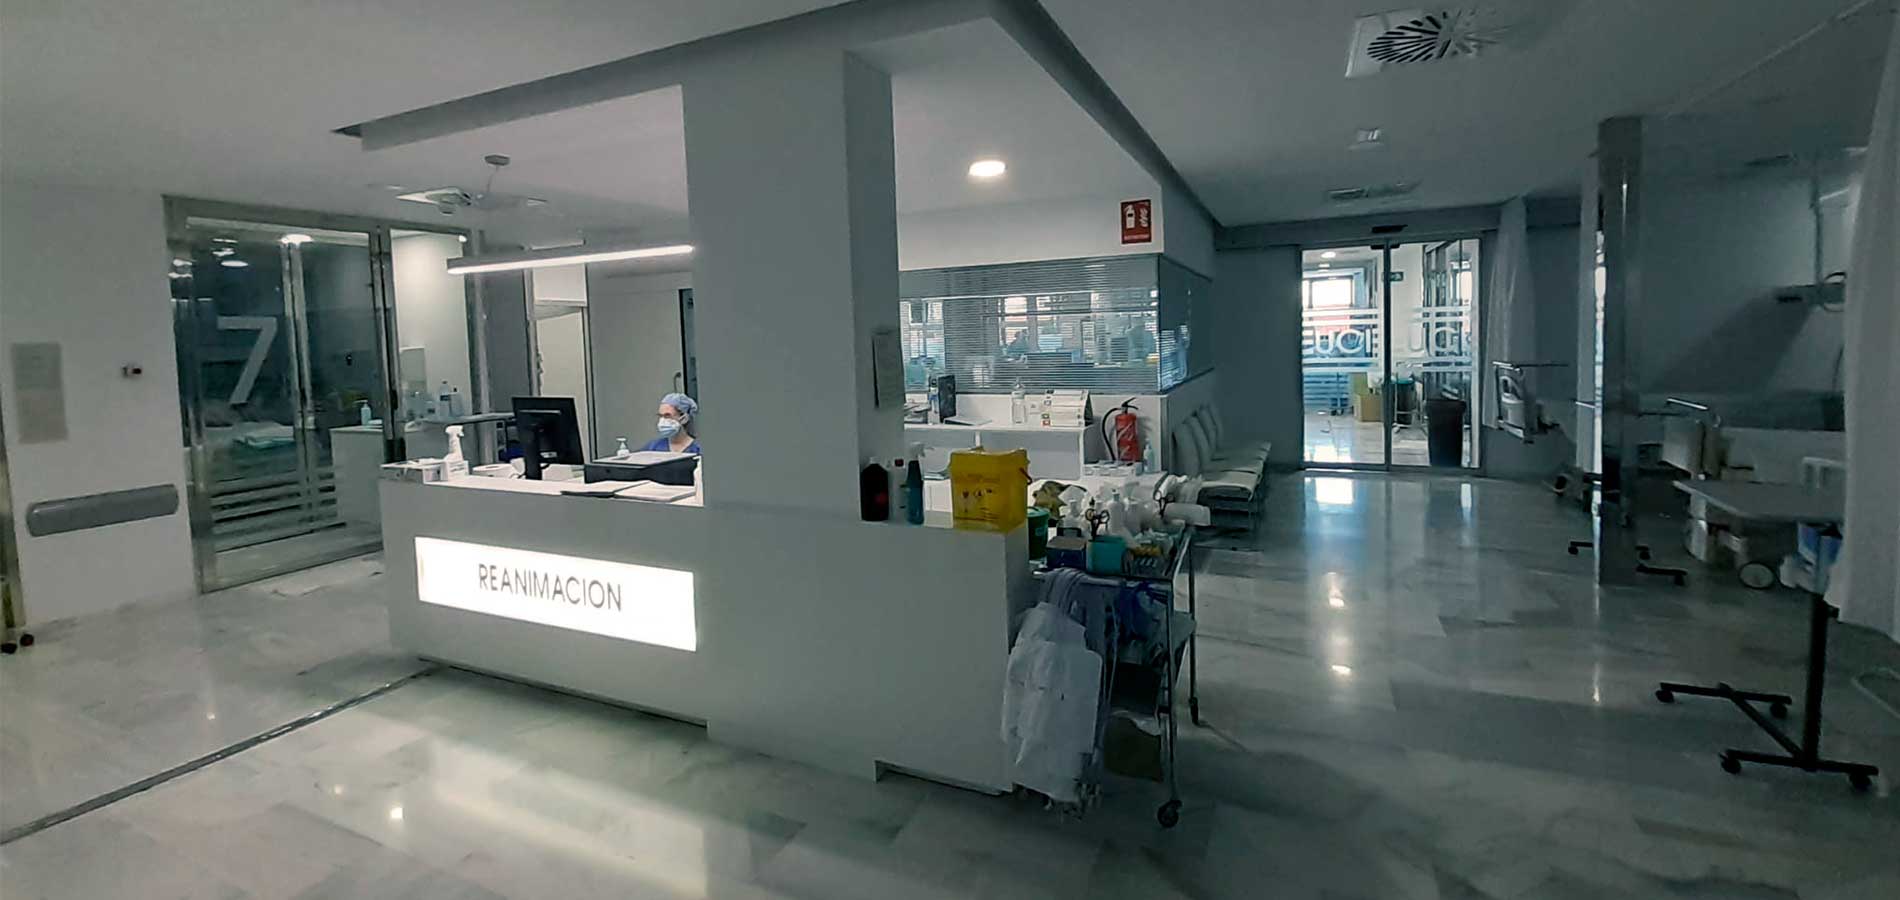 Acuerdo marco de conservación en Centros Sanitarios de Córdoba y Sevilla